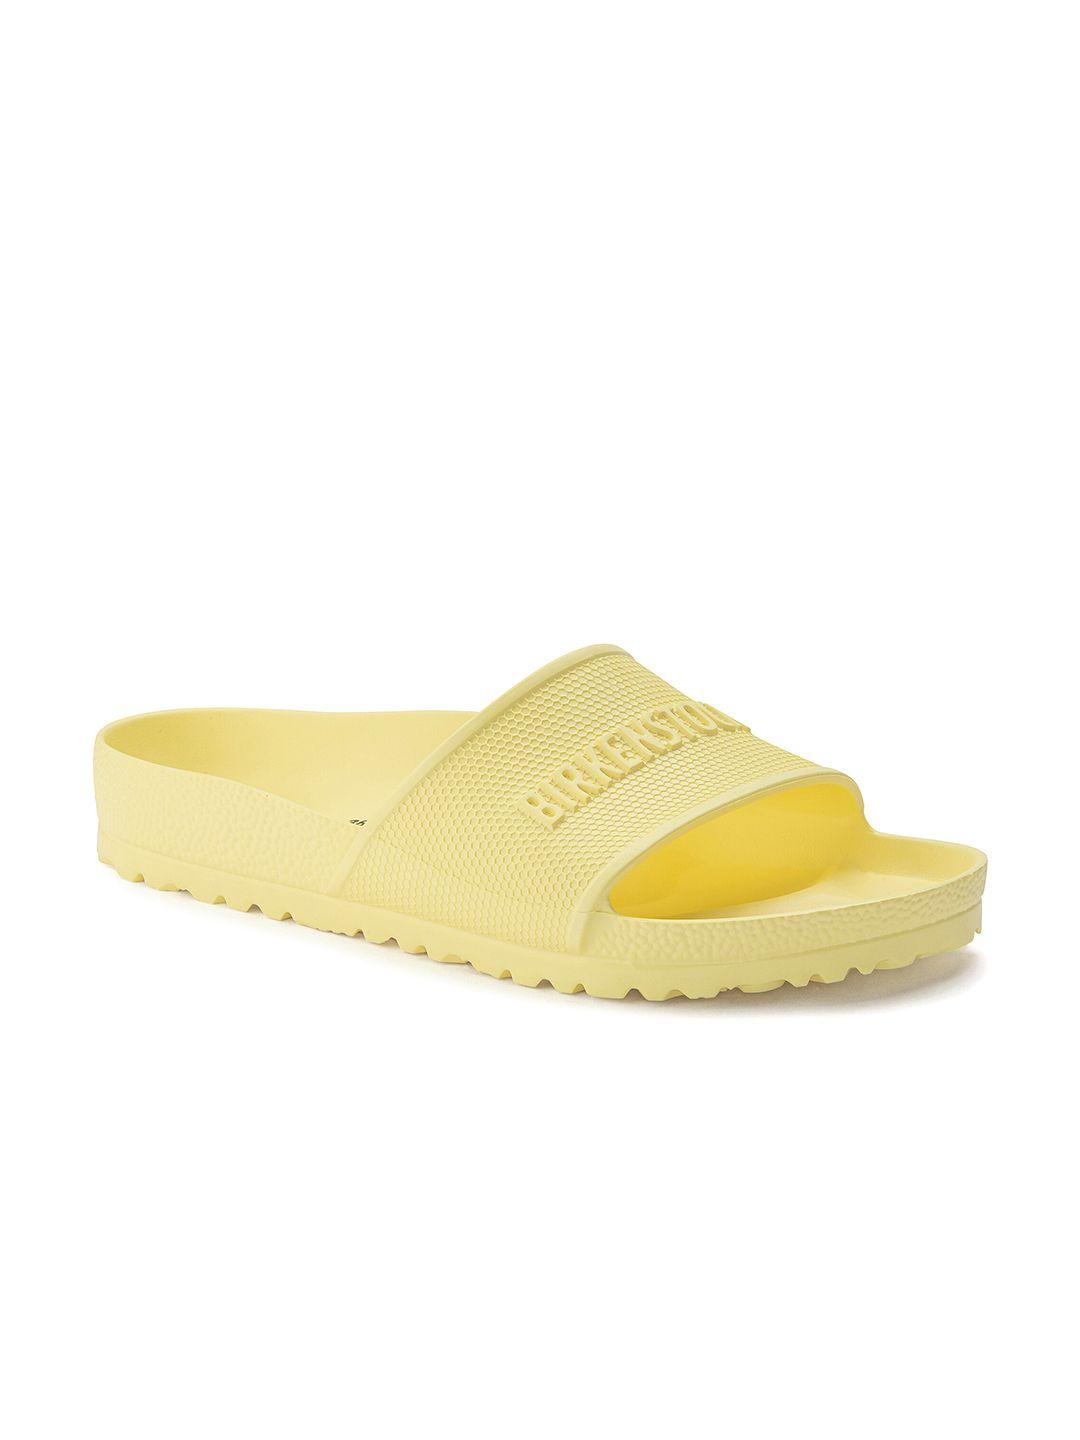 birkenstock unisex yellow barbados sandals